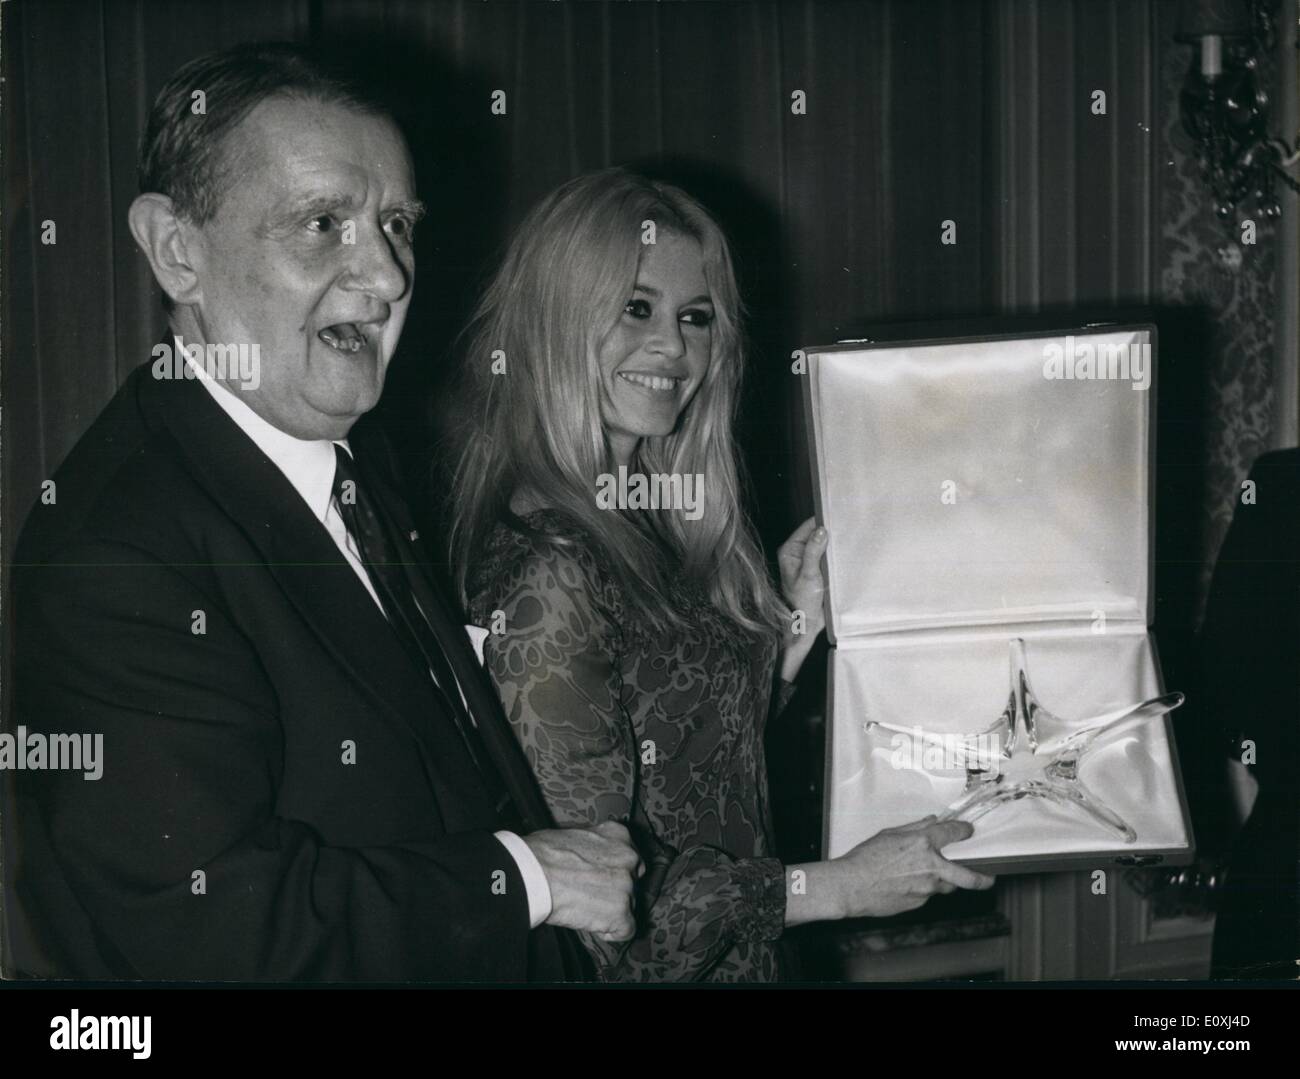 11 novembre 1966 - Cristal colombe et Star pour B.B. : Brigitte Bardot a été l'un des récipiendaires de la Colombe Cristal, un prix spécial accordé par l'Académie du cinéma français. Photo montre Brigitte Bardot, photographiée avec l'Ciristal Star. Sur le côté gauche de Georges Auric Président de l'Académie. Banque D'Images